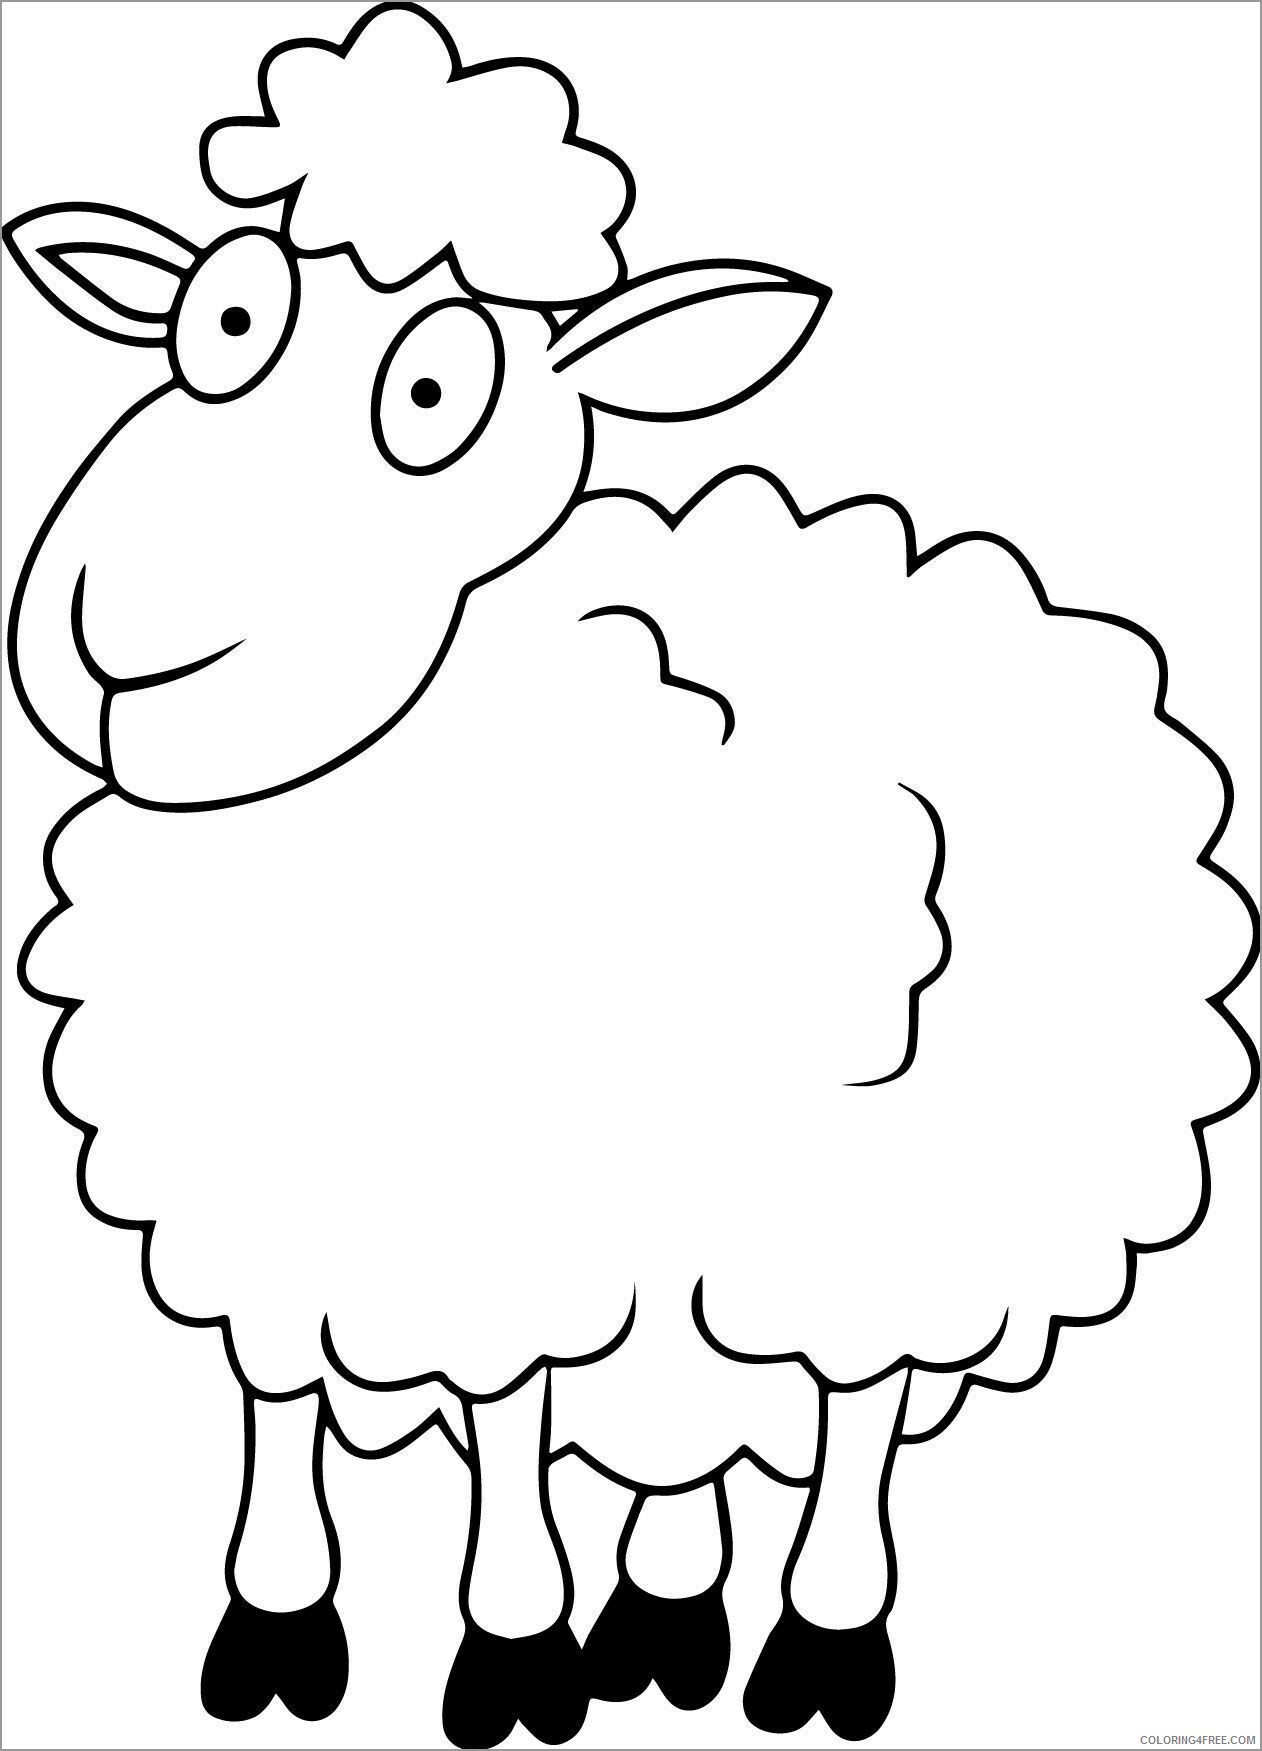 Lamb Coloring Pages Animal Printable Sheets of a lamb 2021 3106 Coloring4free